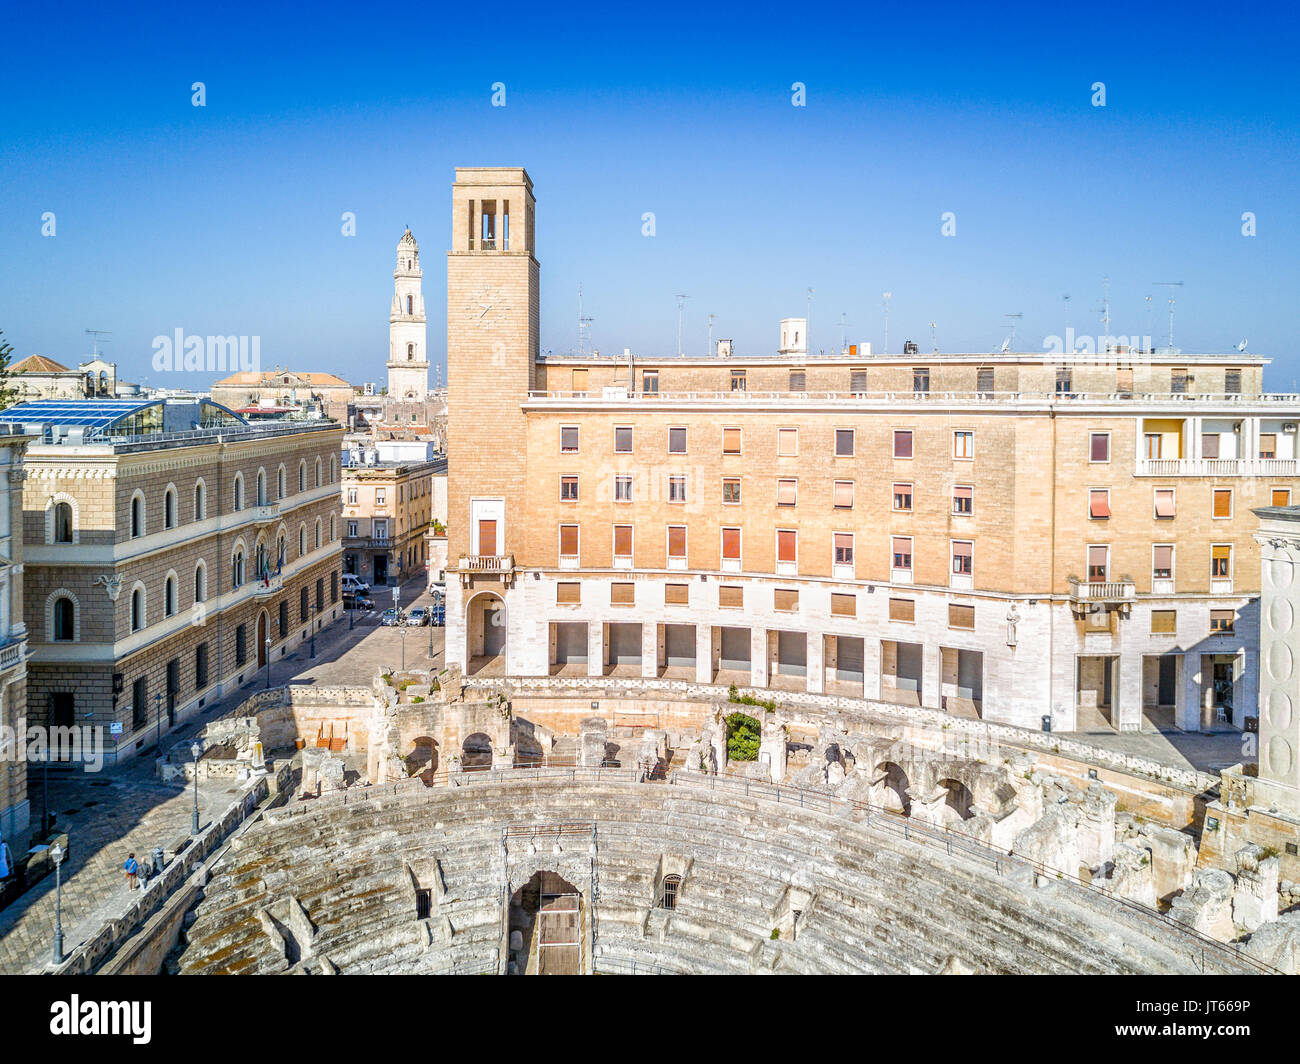 Historic city center of Lecce in Puglia, Italy Stock Photo